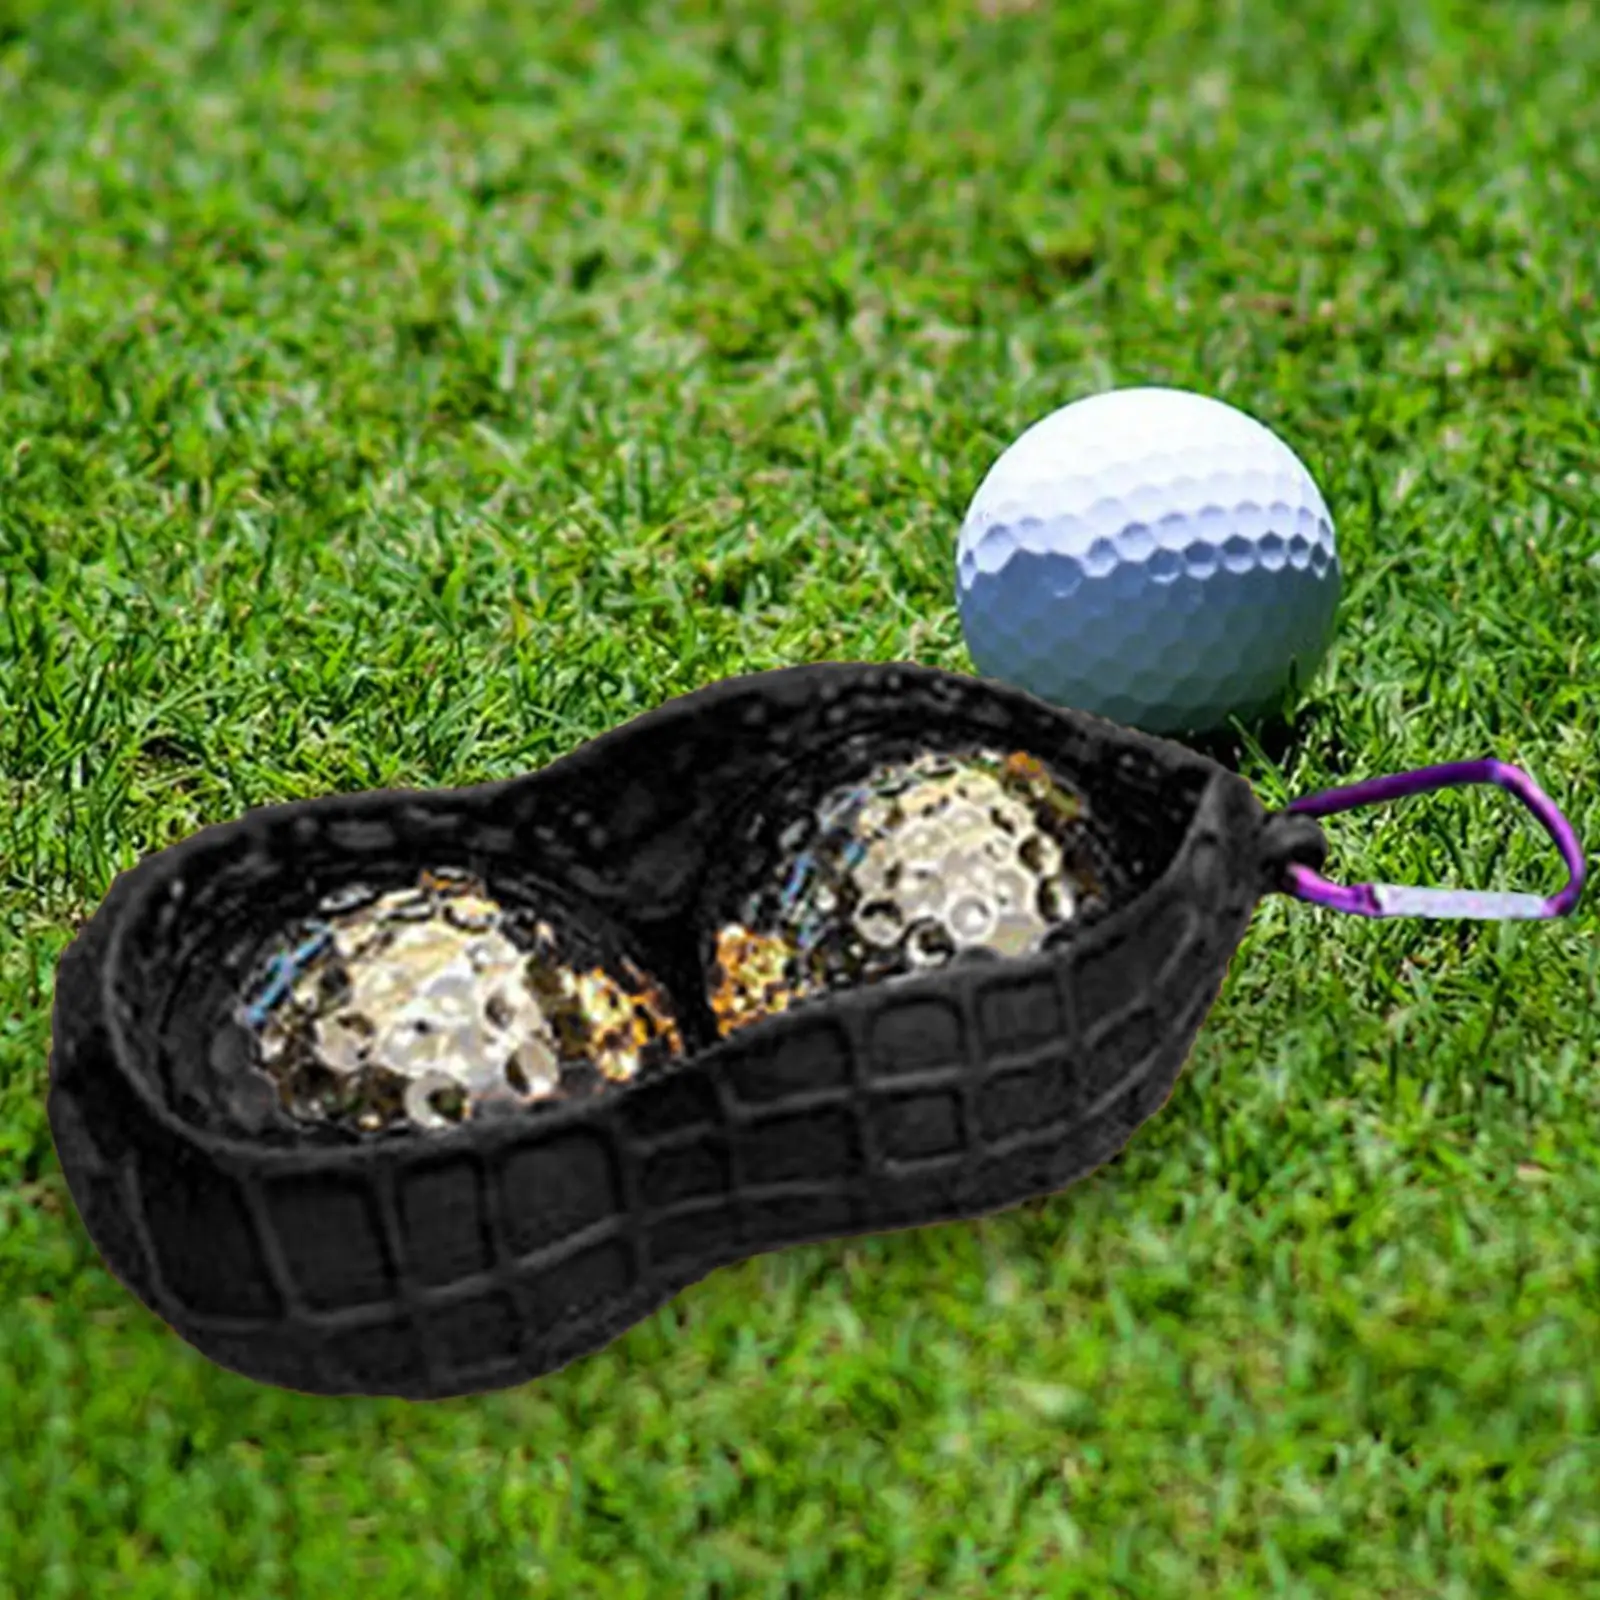 Сумка-держатель для мячей для гольфа с пряжкой вмещает 2 мяча для гольфа, легко крепится к сумке, чехлу для мужчин и женщин, аксессуарам для переноски мячей